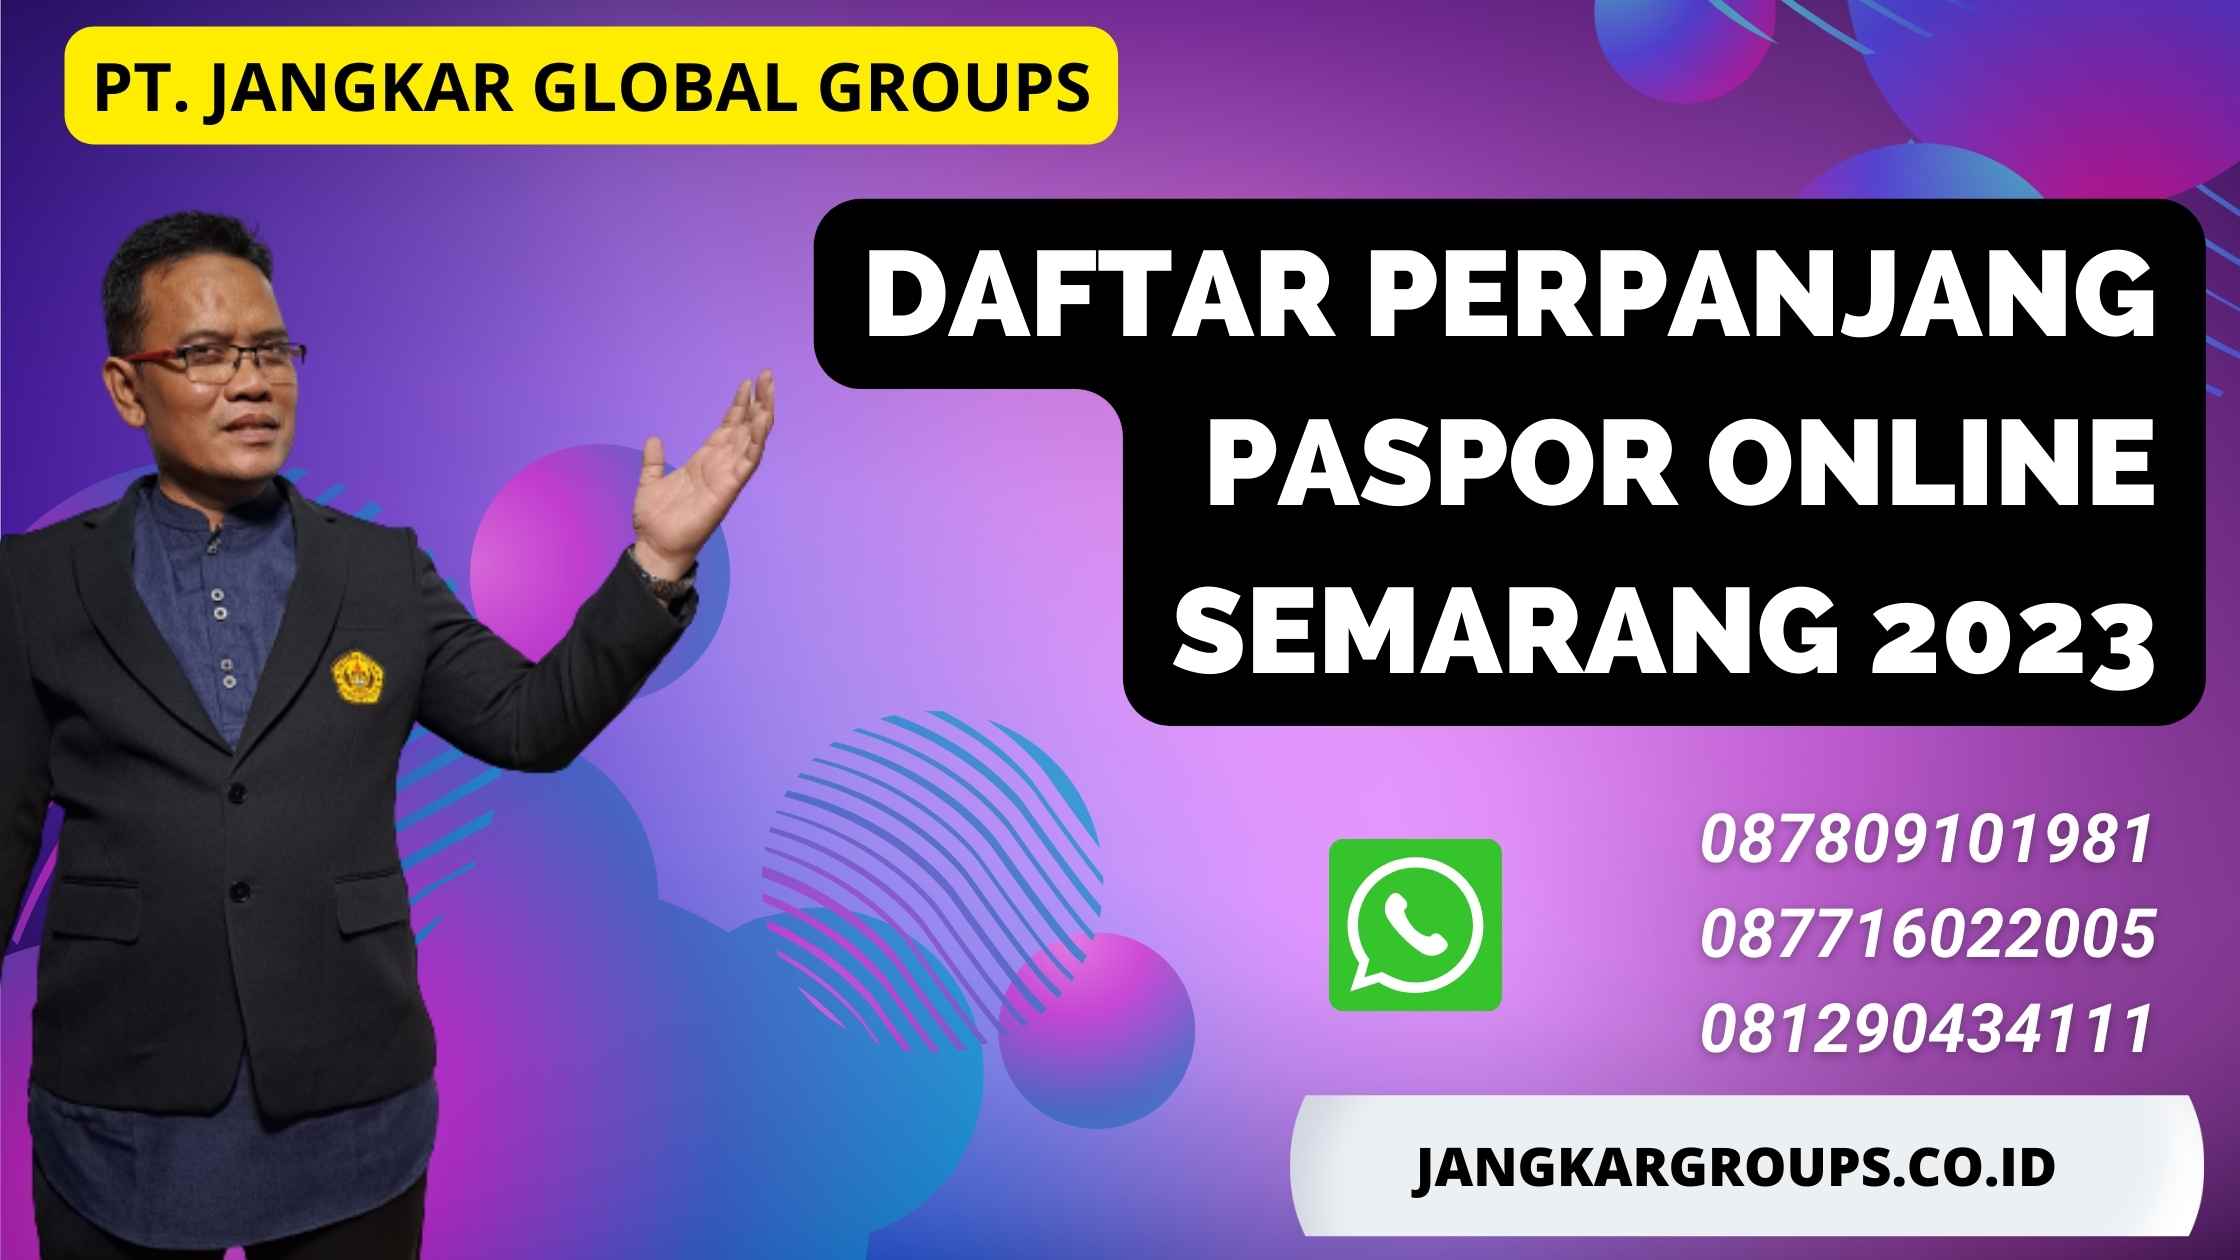 Daftar Perpanjang Paspor Online Semarang 2023